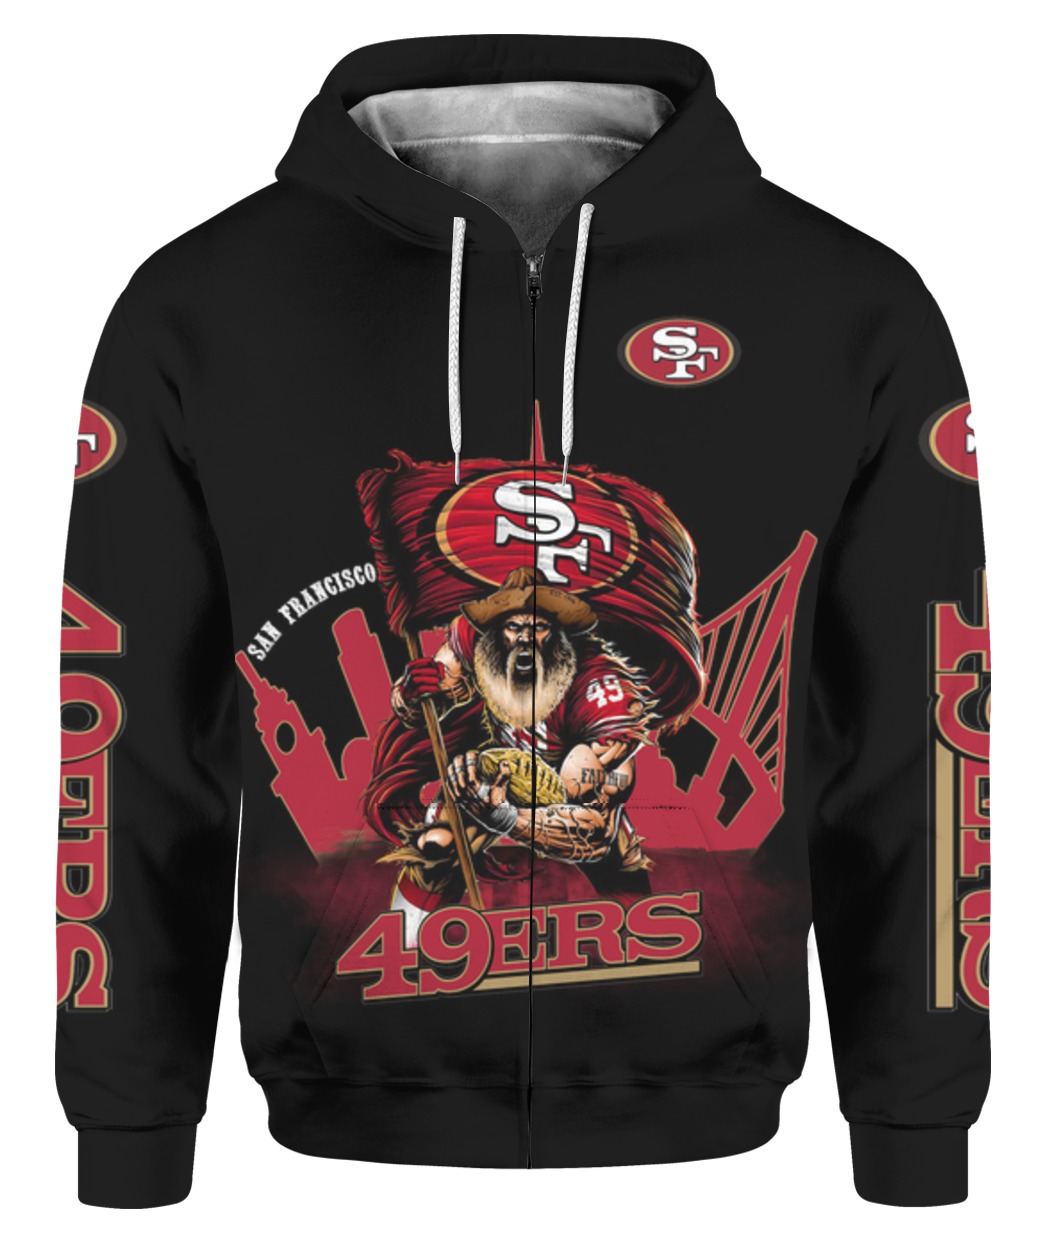 Mens Nfl San Francisco 49ers Super Bowl Liv Champions Hoodie Plus Size